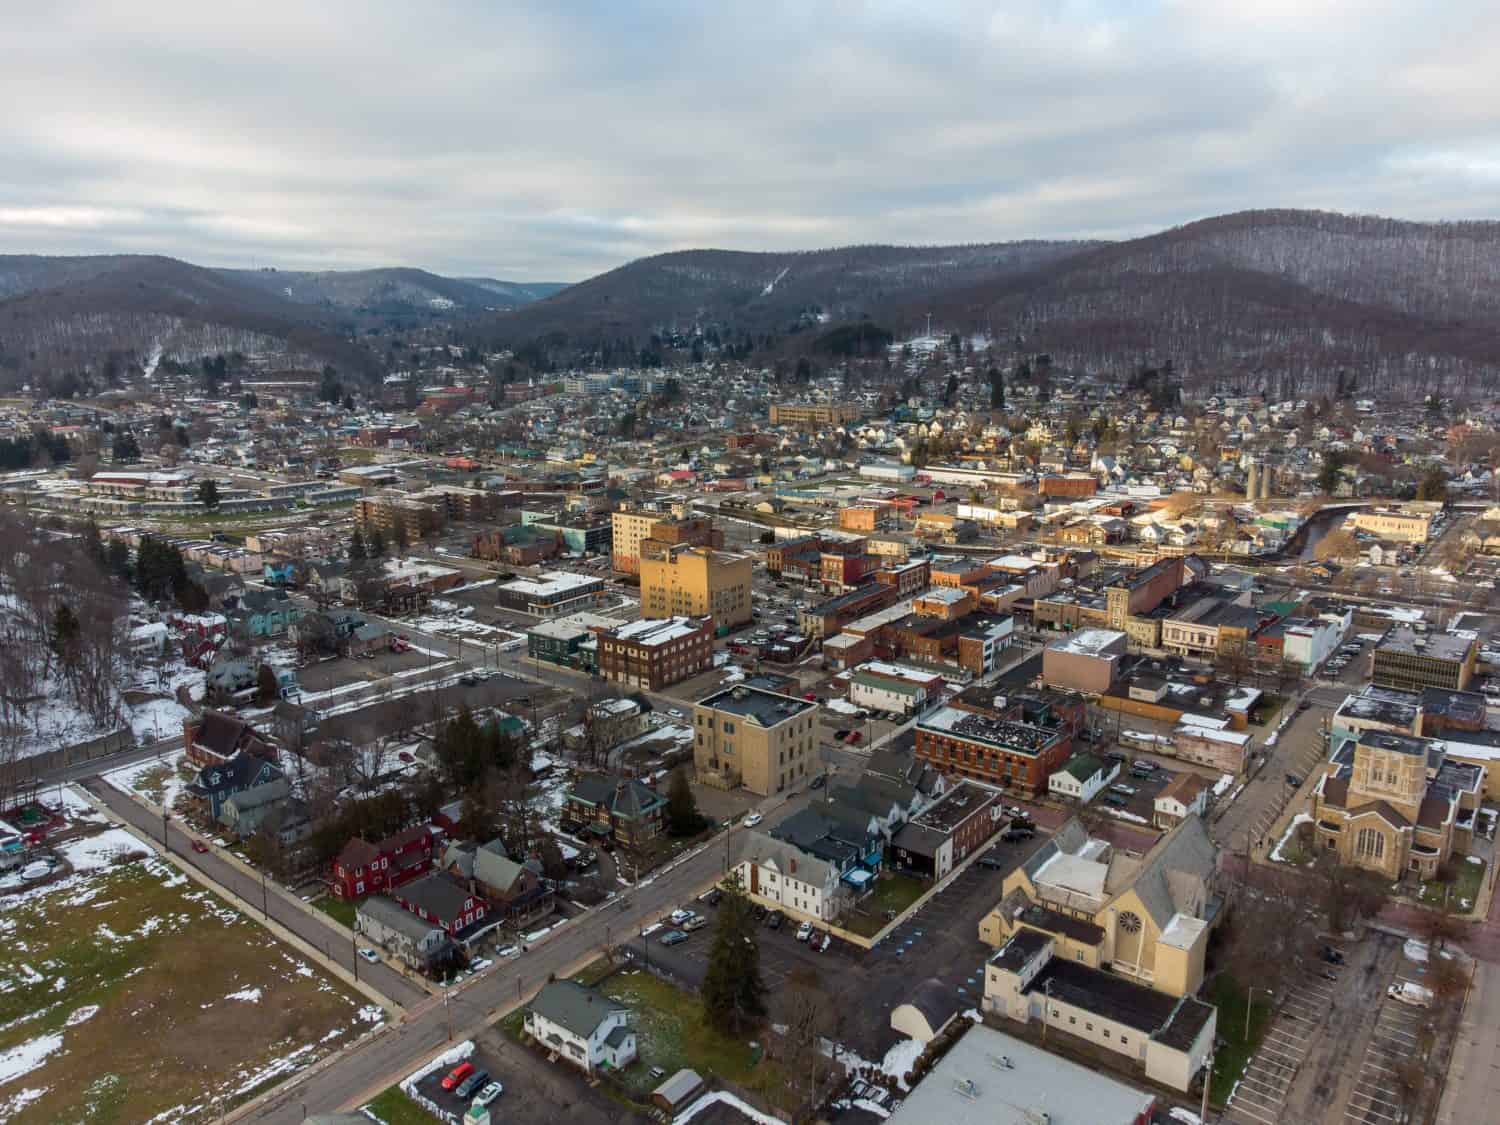 Una bellissima veduta aerea della città di Bradford, Pennsylvania in inverno.